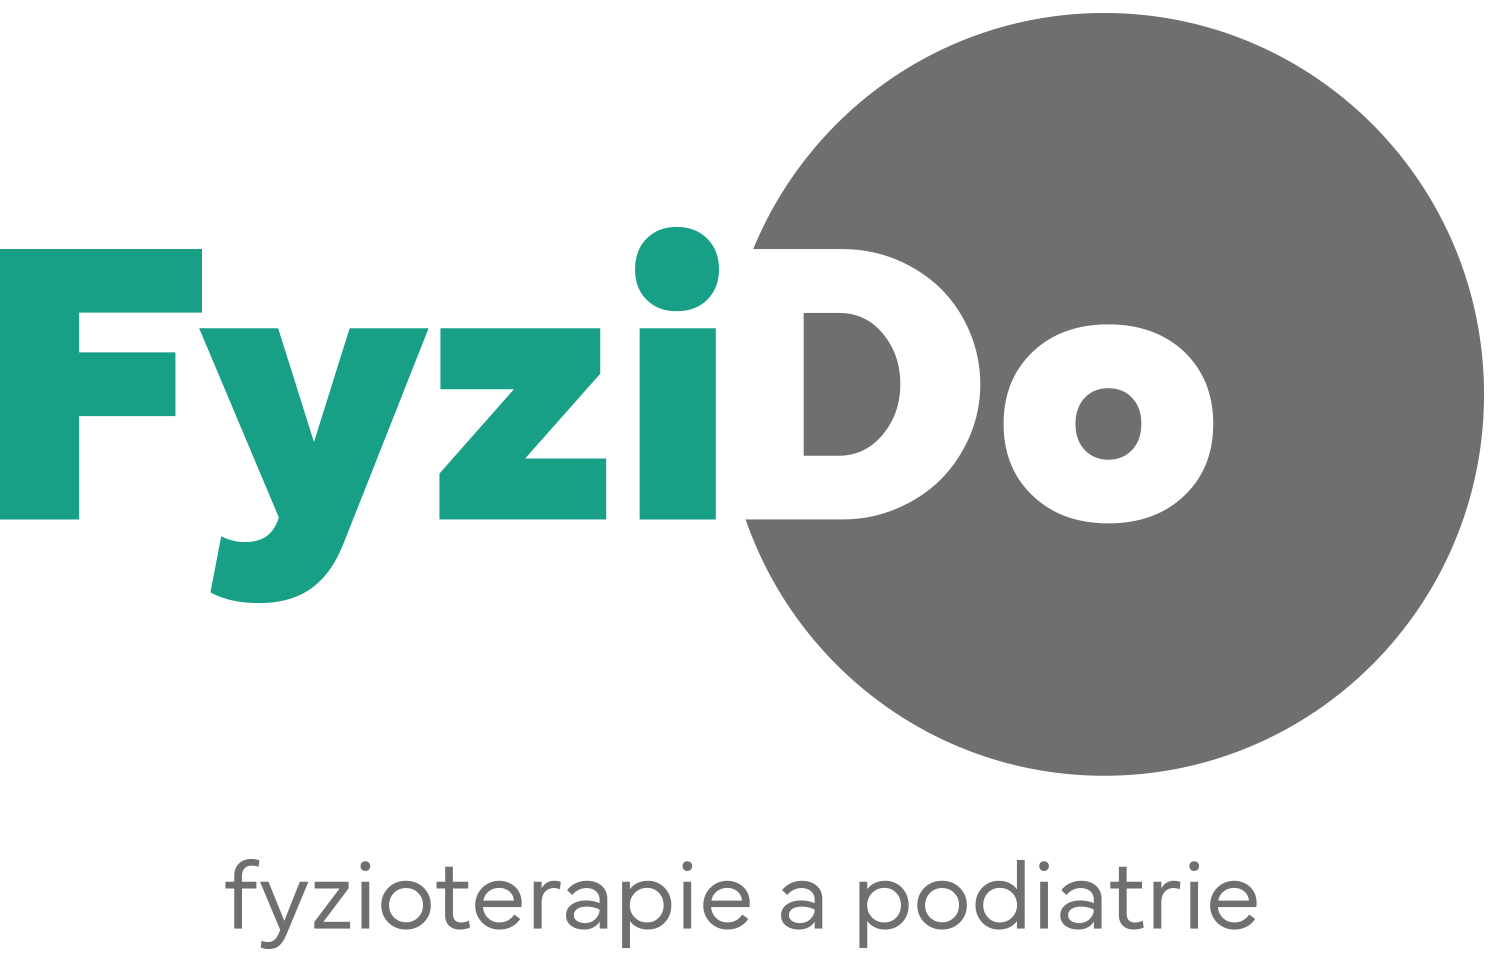 Fyzido - podriatrie a fyzioterapi